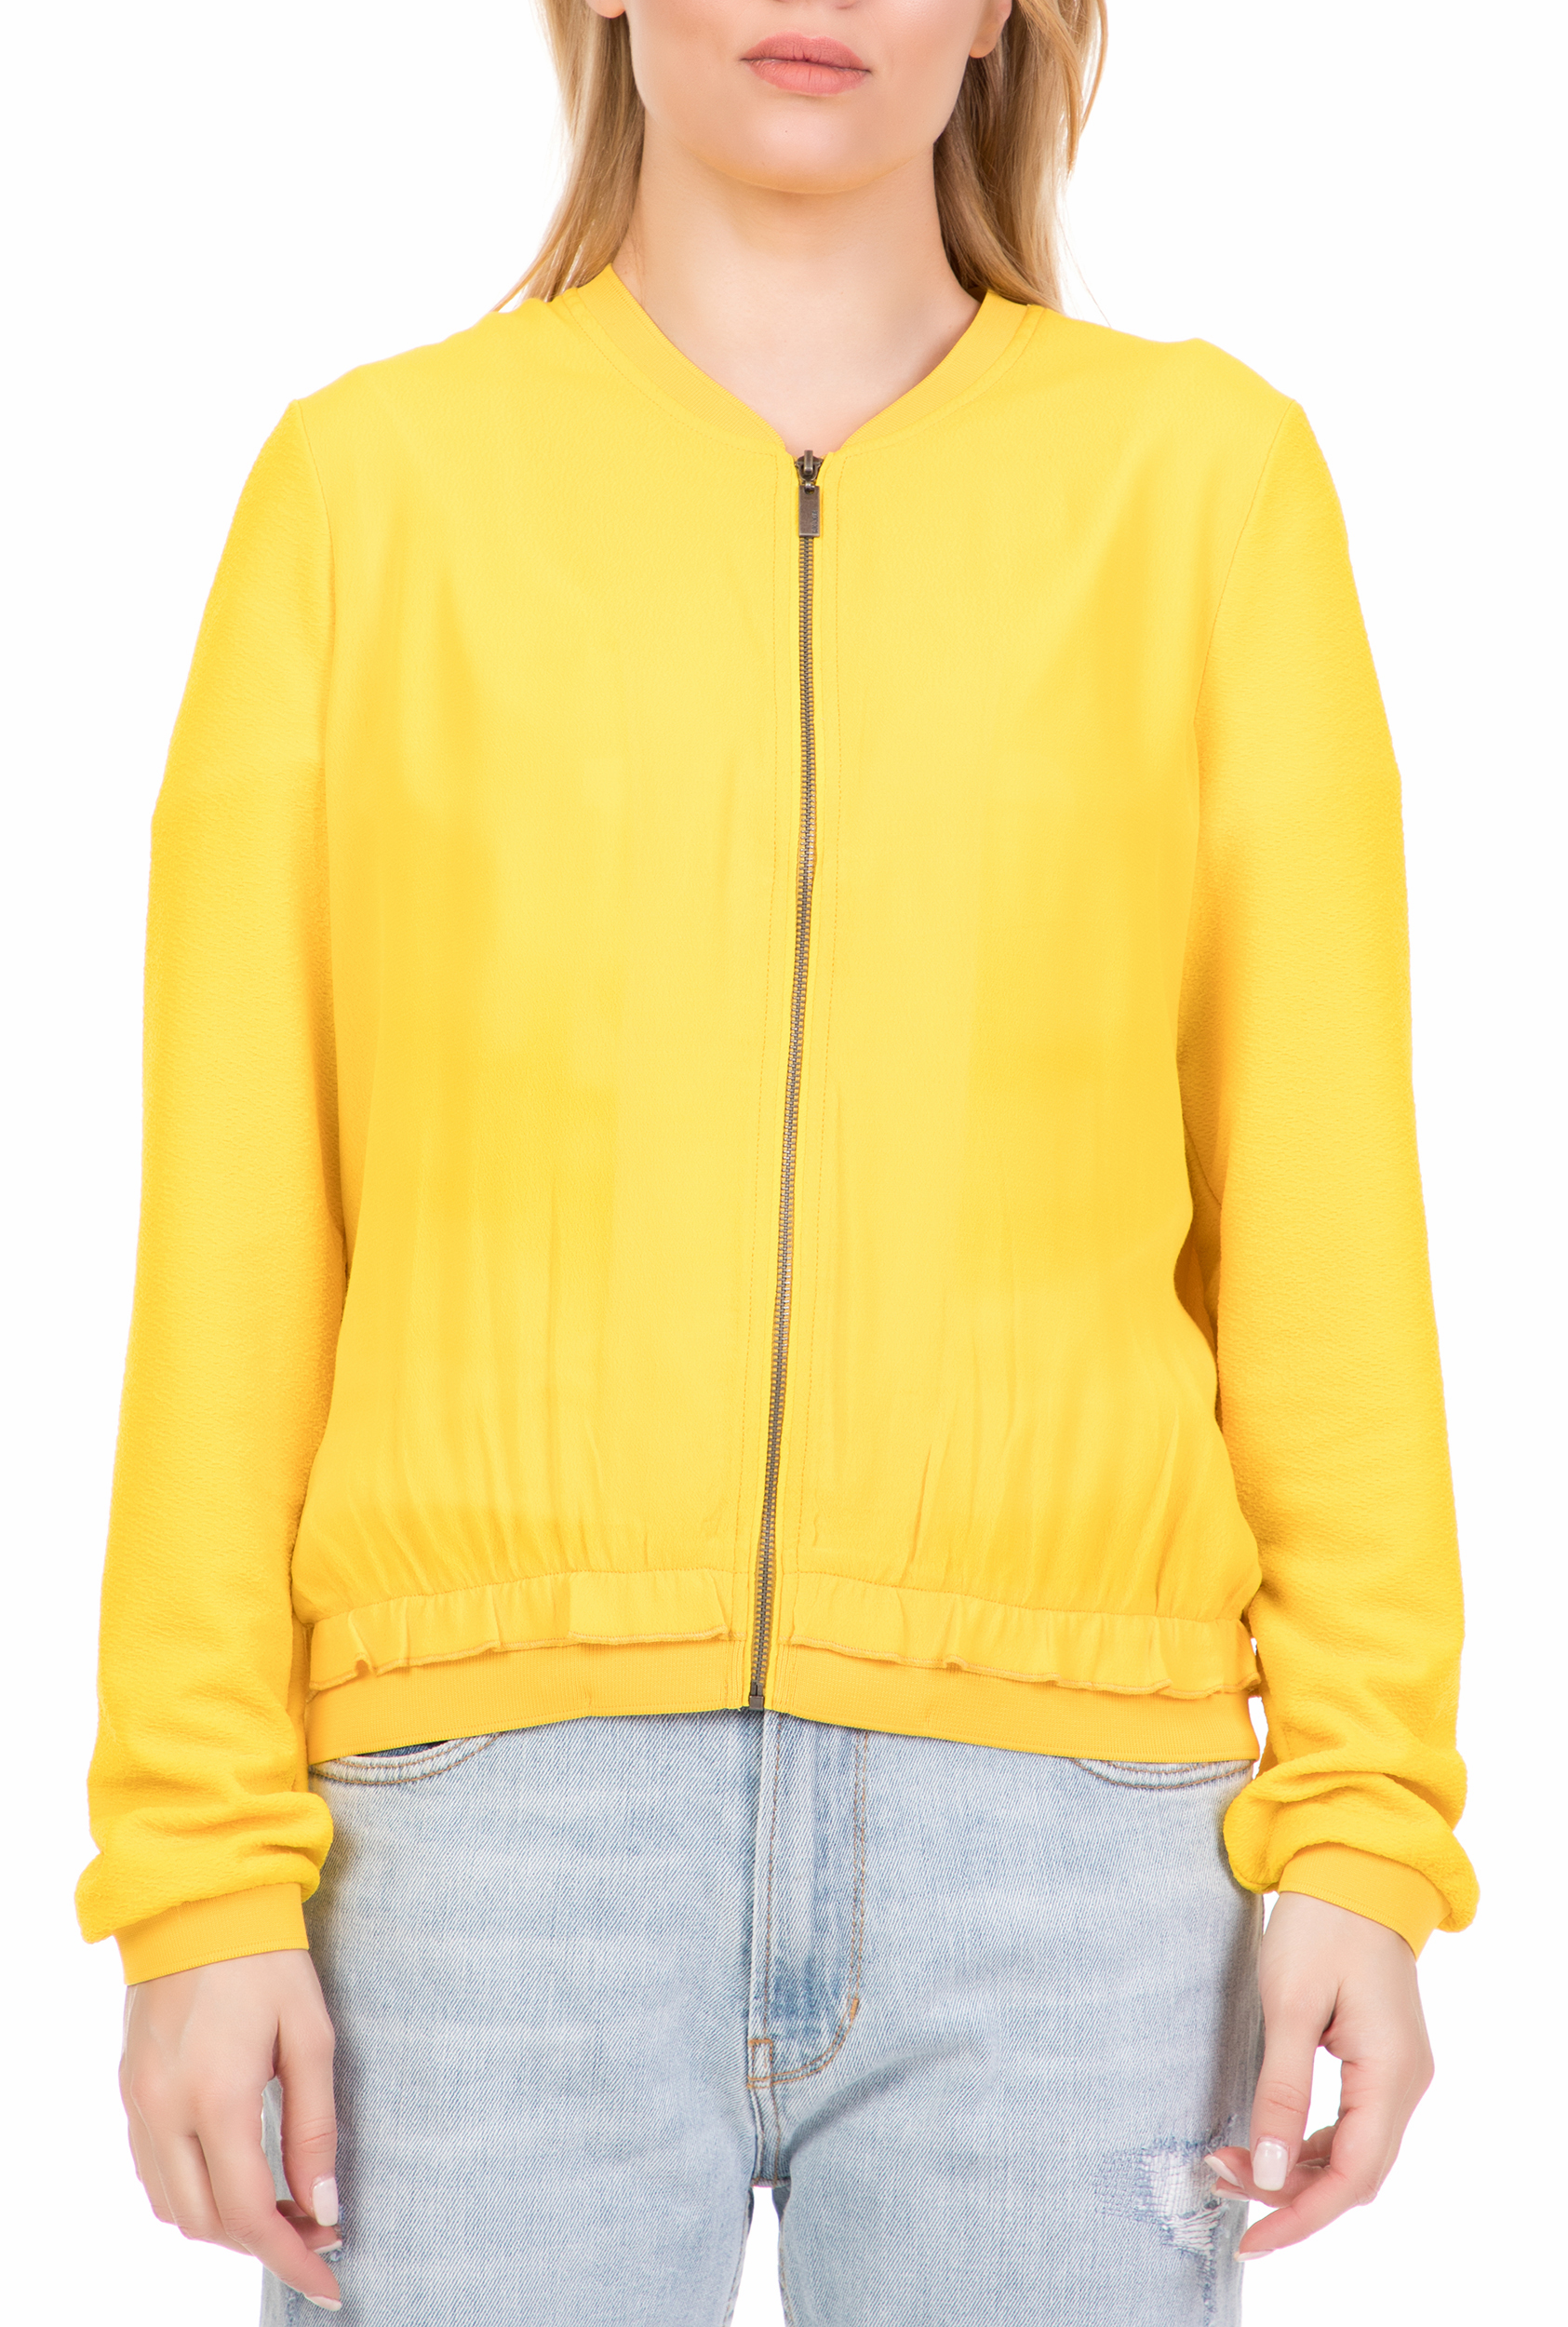 Γυναικεία/Ρούχα/Πανωφόρια/Τζάκετς GARCIA JEANS - Γυναικείο jacket GARCIA JEANS κίτρινο